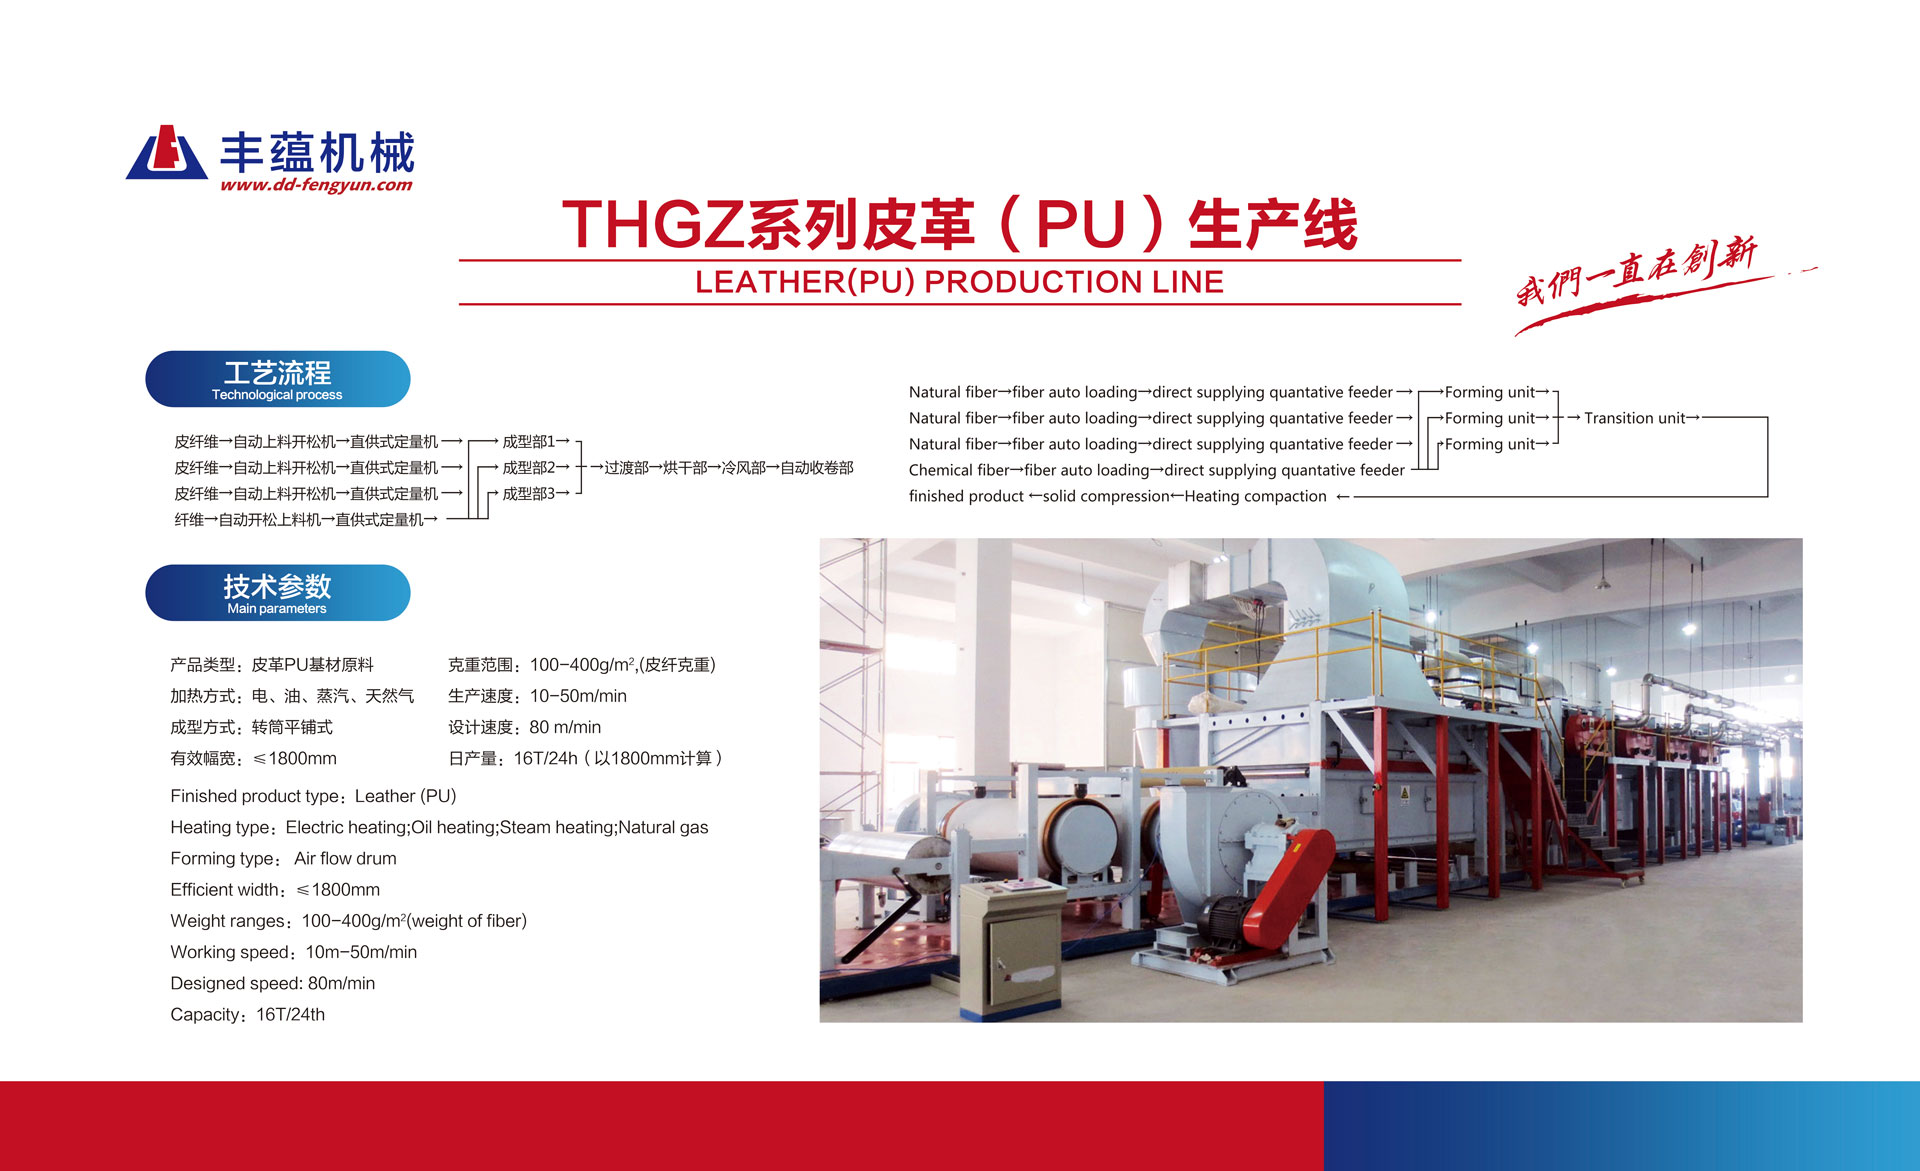 THGZ系列气流成网，干法成型皮革（PU）生产线